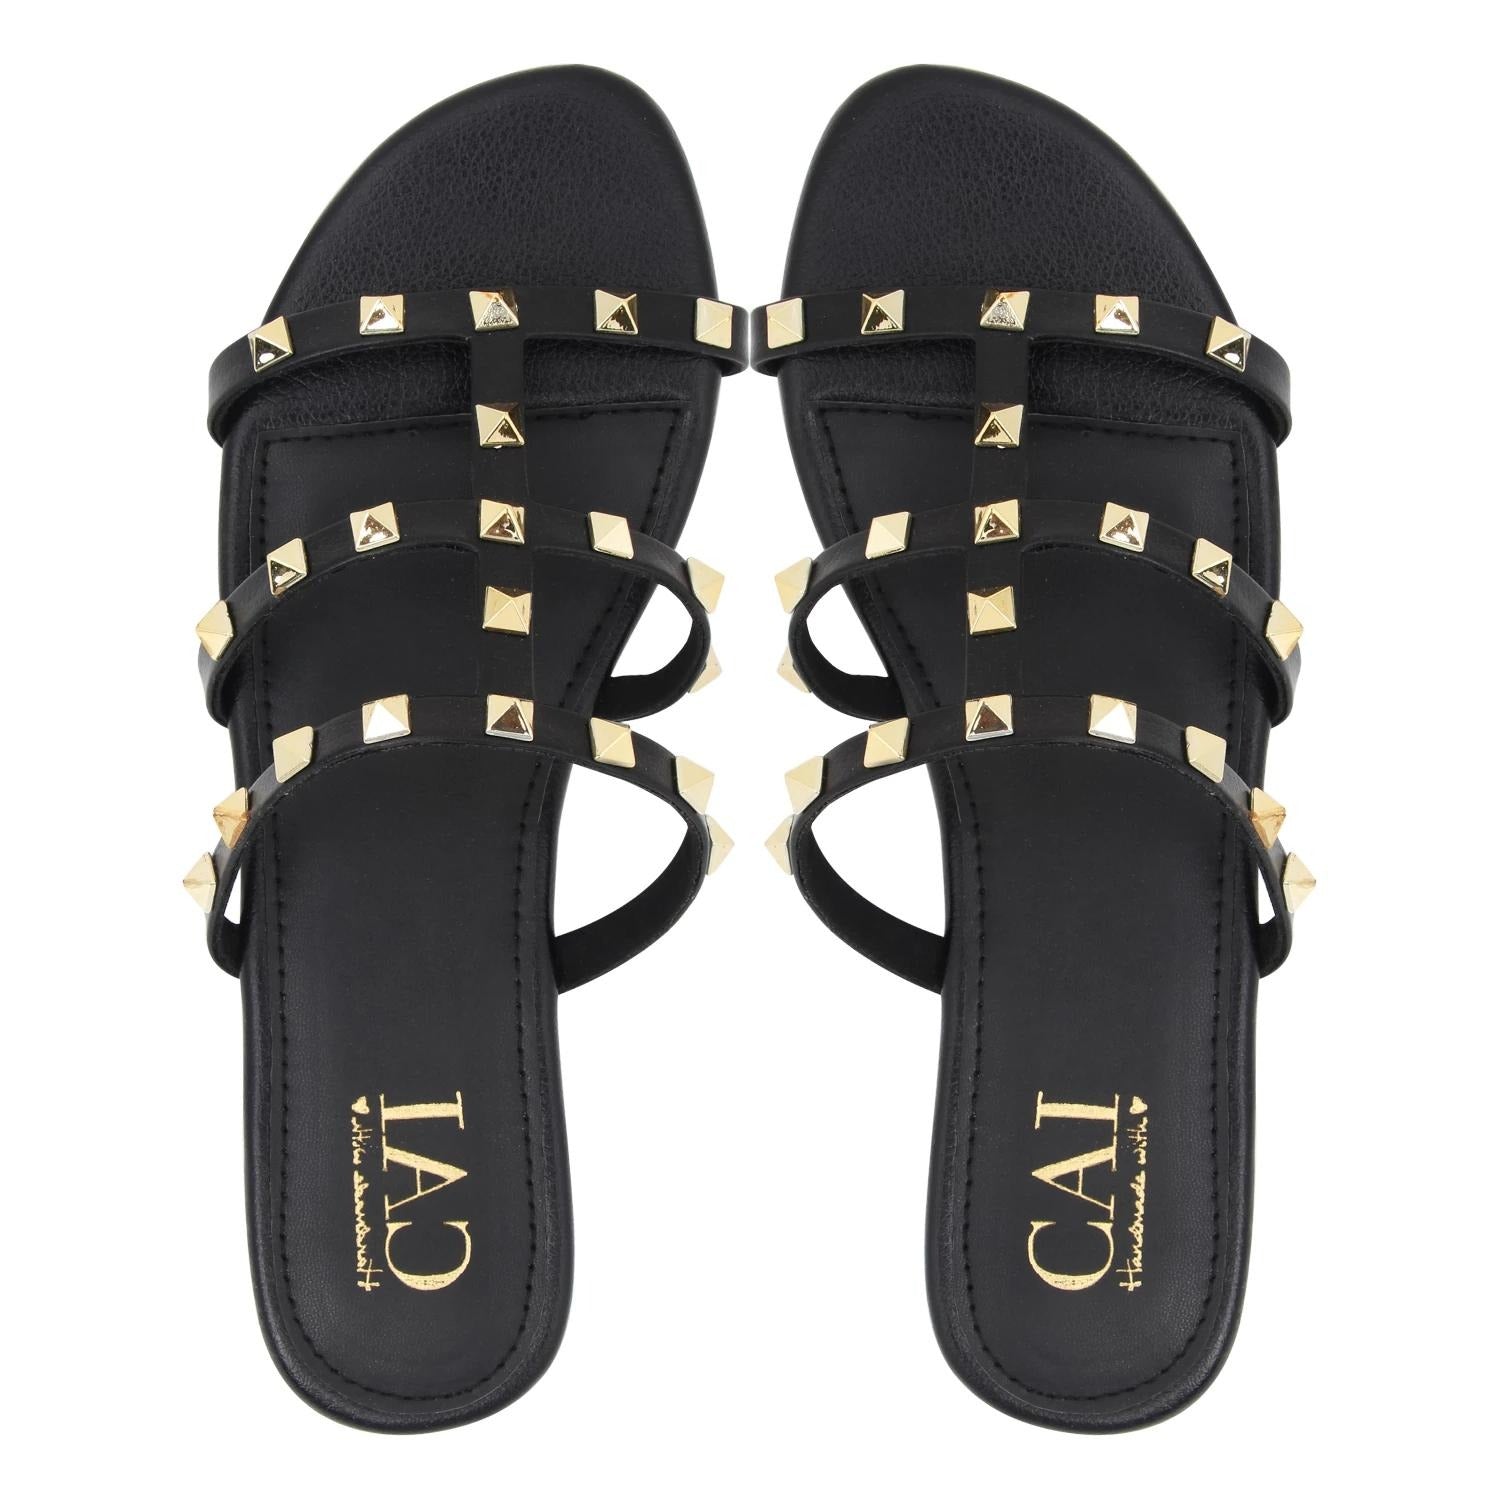 Women's Flats: Buy Studded Slide Black Flat Sandals for Women Online ...